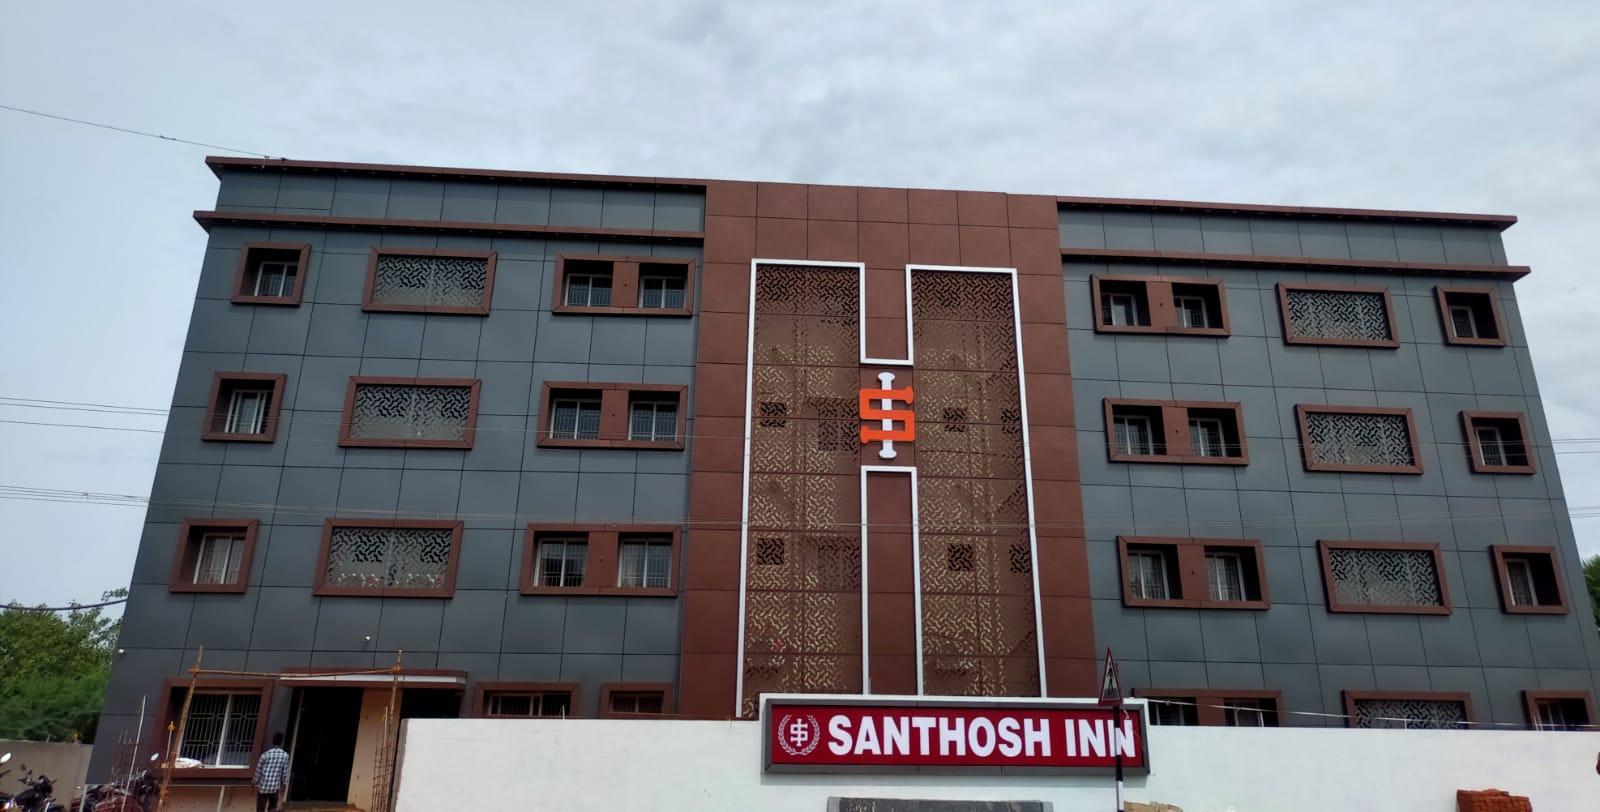 Hotel Santhosh Inn - 韋蘭卡尼